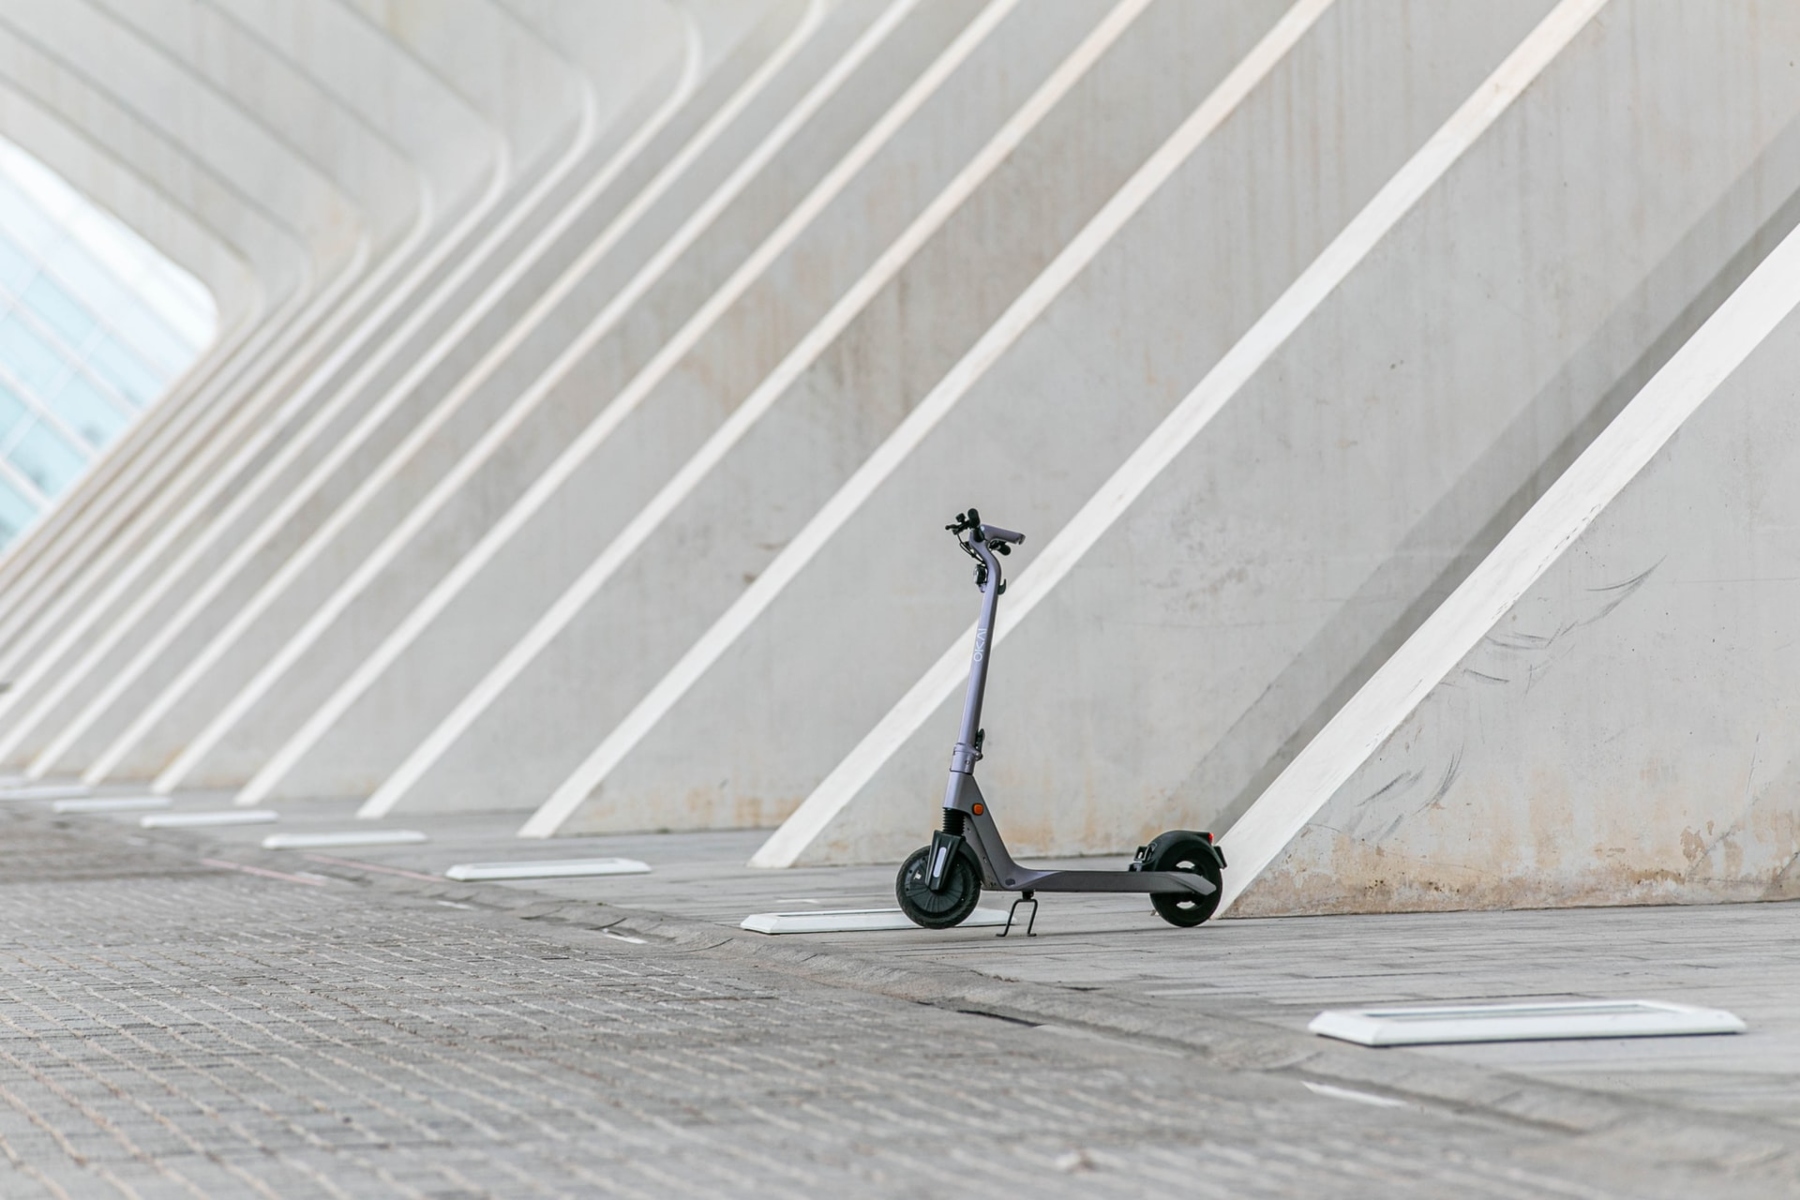 Ηλεκτρικά scooter: Πώς τα ηλεκτρικά scooter μπορούν να μας αλλάξουν την ζωή;